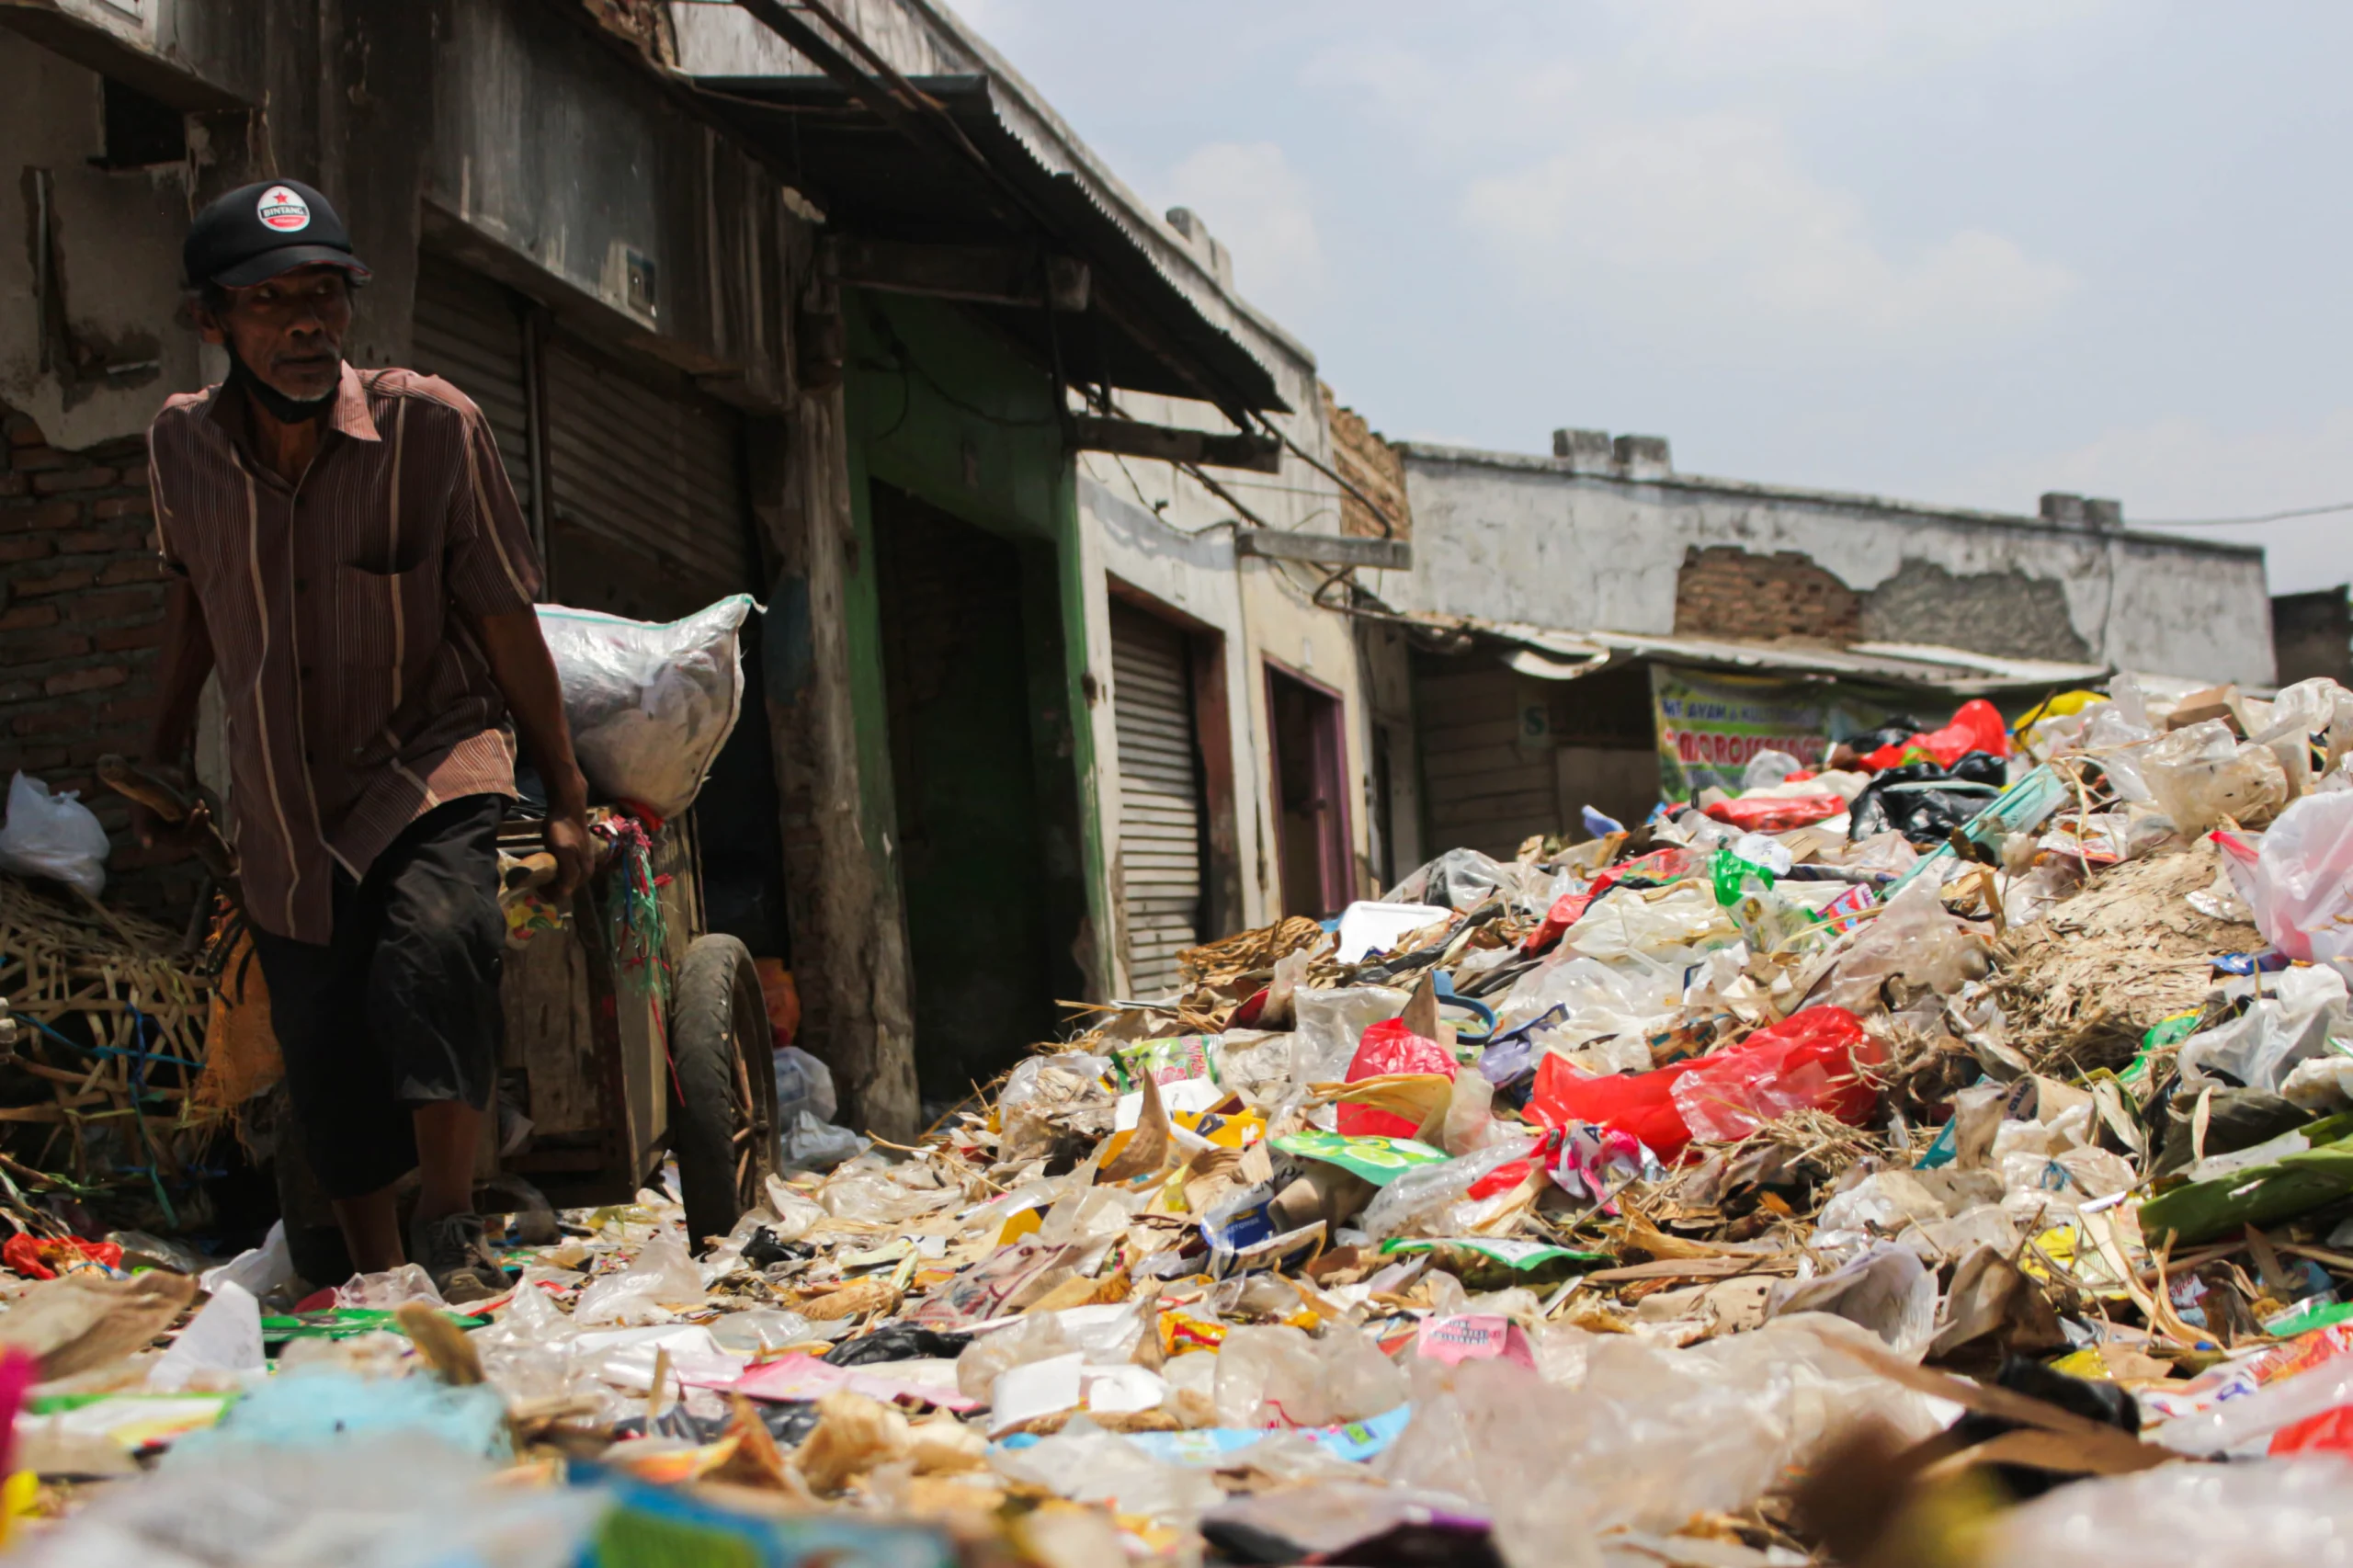 Pemkab Bandung Belum Maksimal Tangani Sampah, Masih Kesulitan Mengolah Secara Mandiri